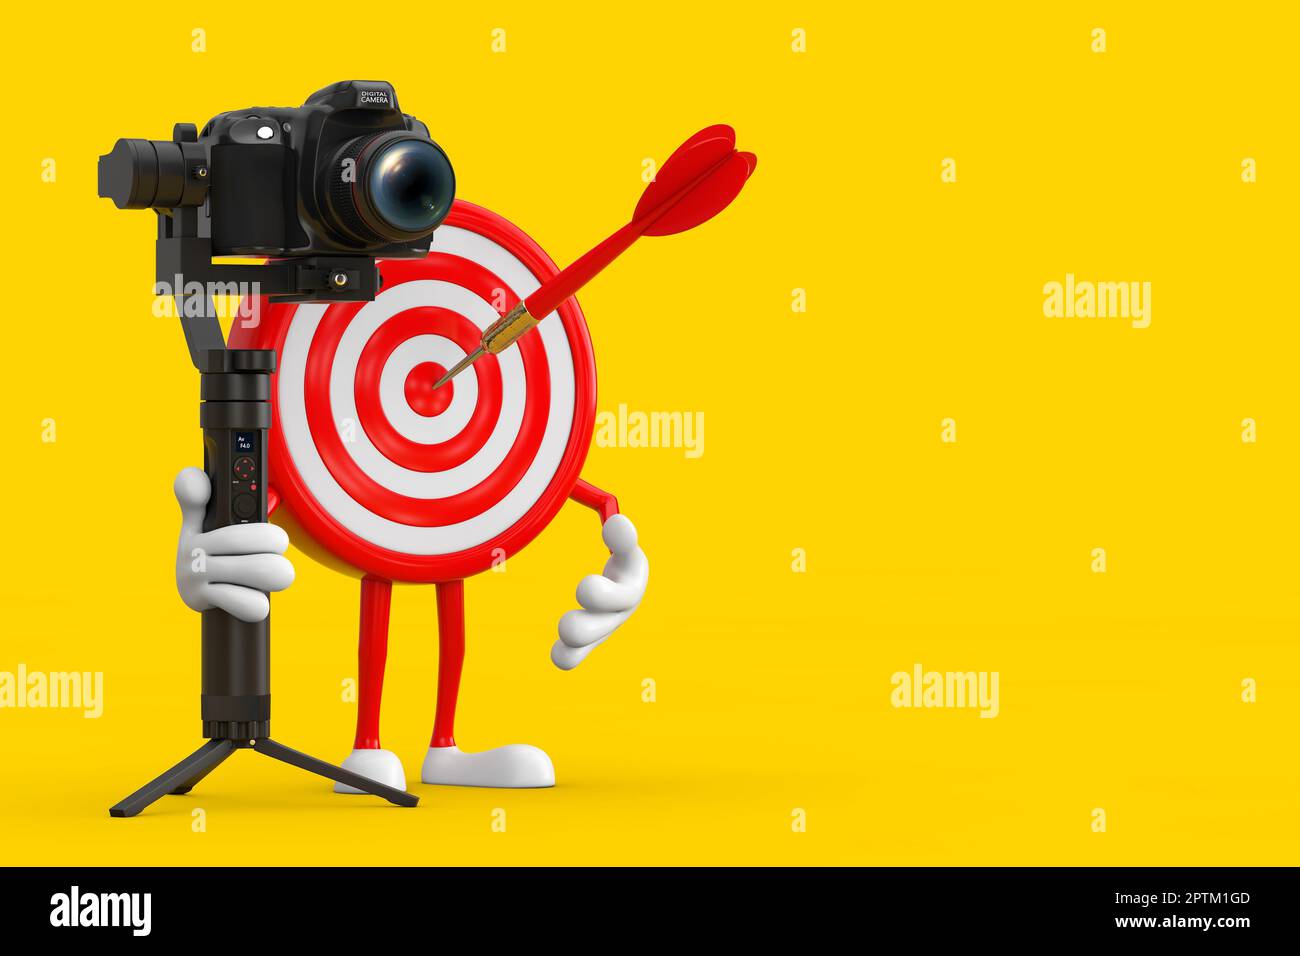 Tiro con l'arco Target e Dart in Center Cartoon personaggio Mascot con DSLR o Video Camera stabilizzatore Gimbal sistema treppiede su sfondo giallo. Foto Stock